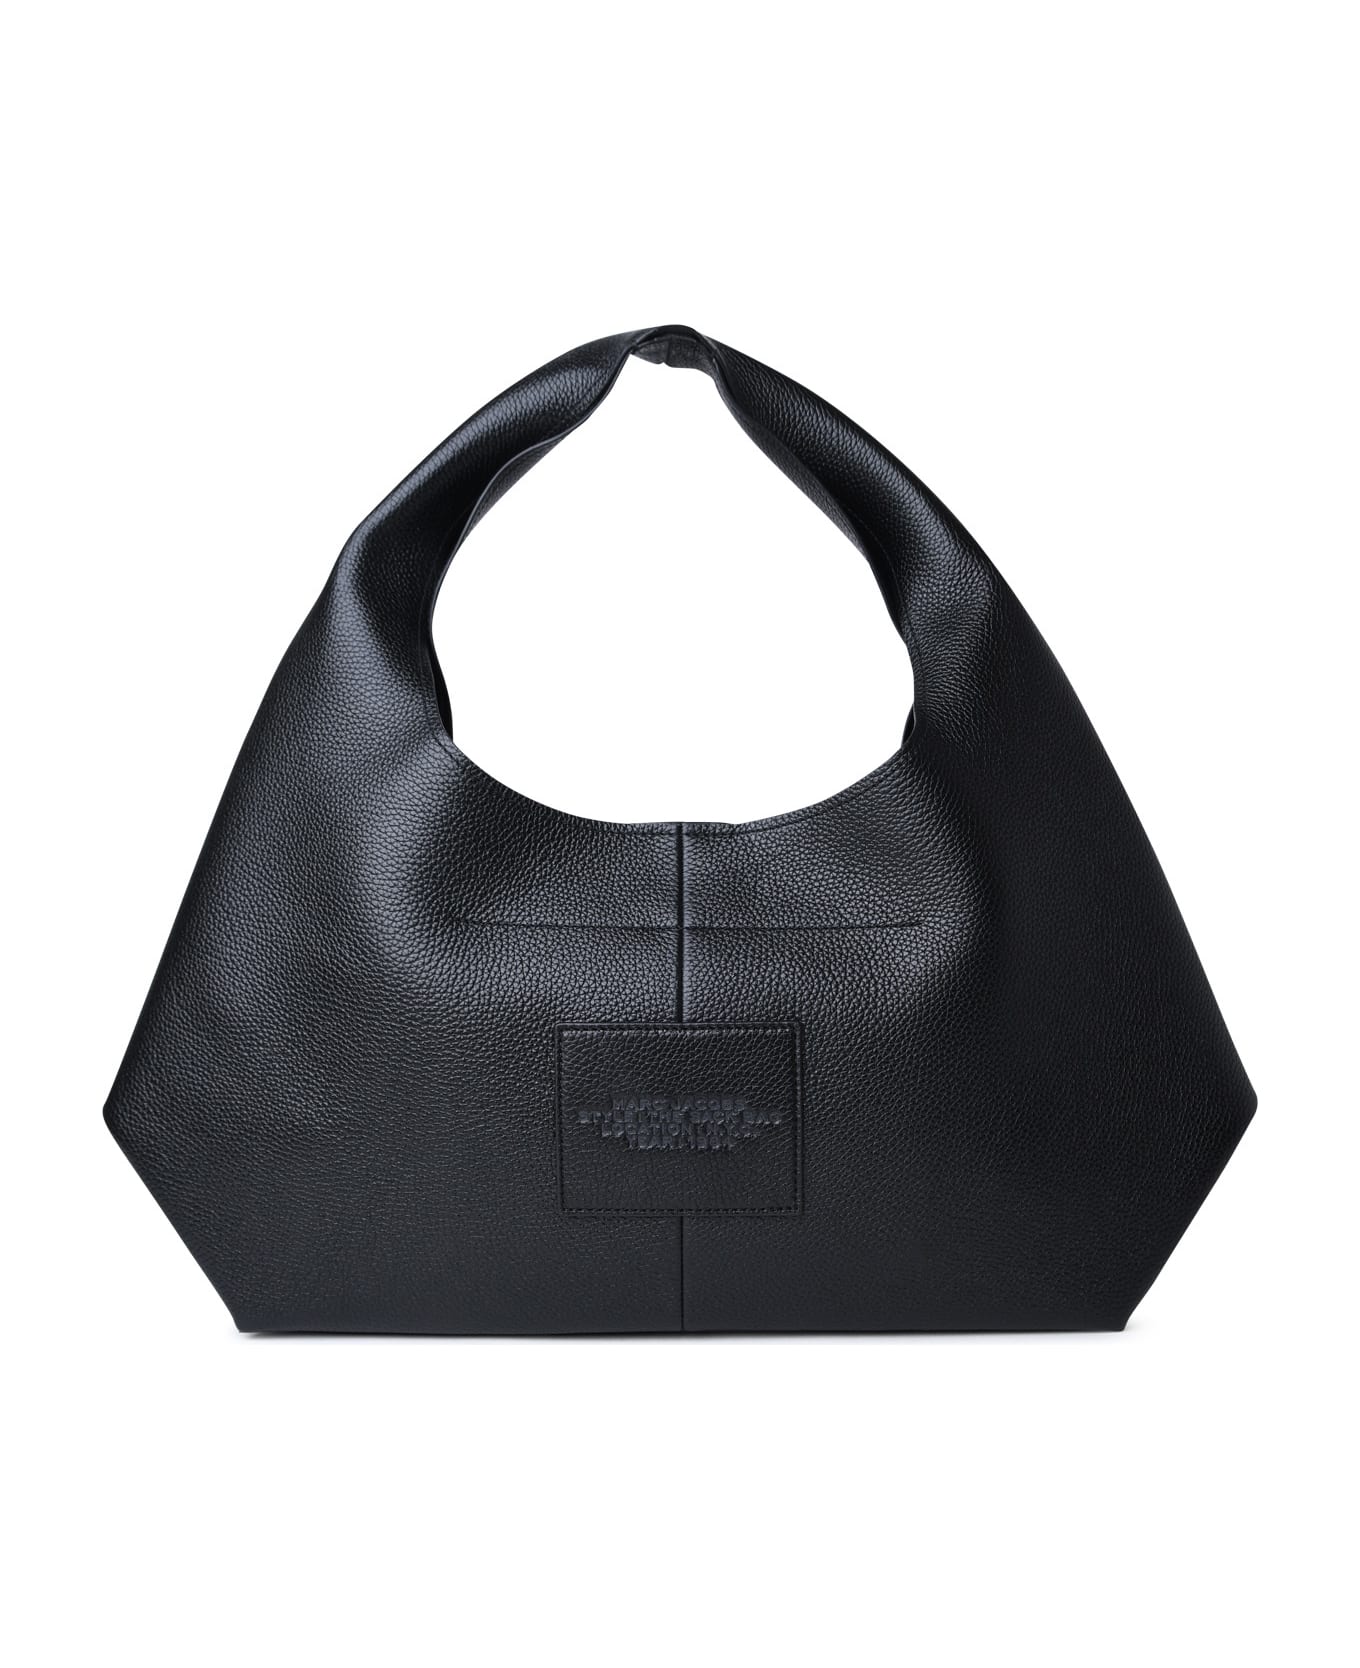 Marc Jacobs 'sack' Black Leather Bag - BLACK